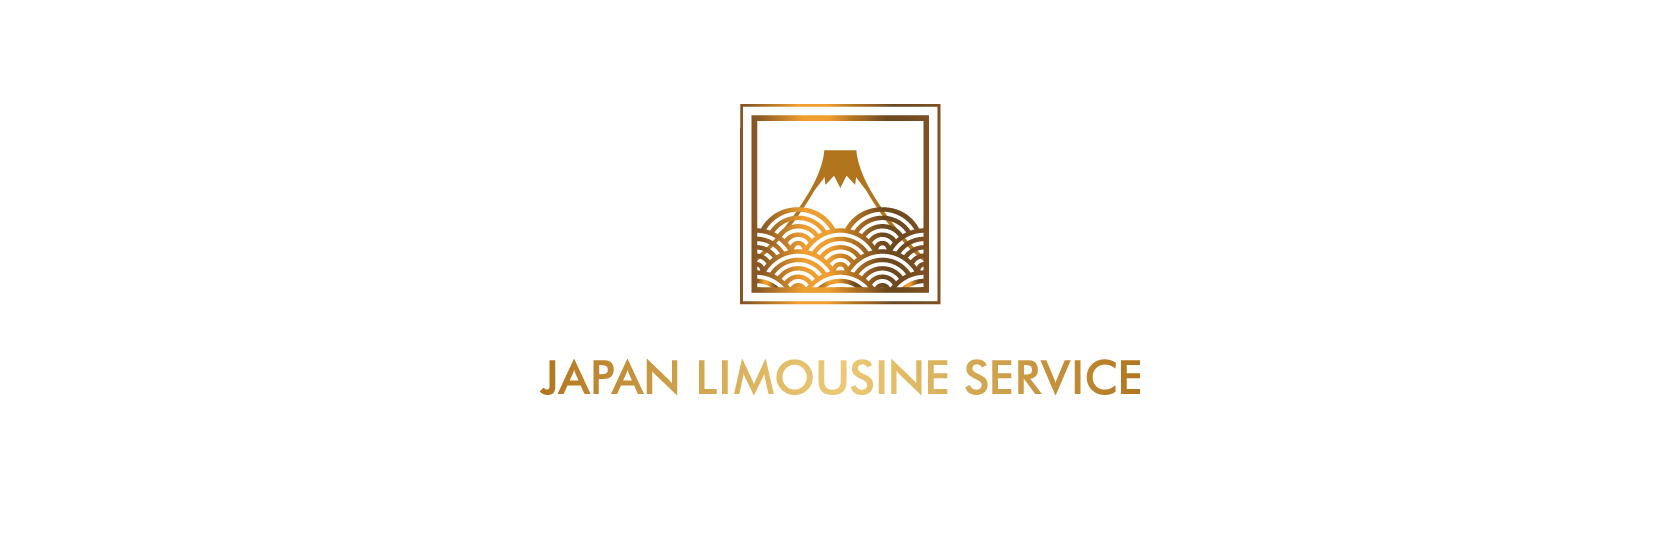 JAPAN LIMOUSINE SERVICE